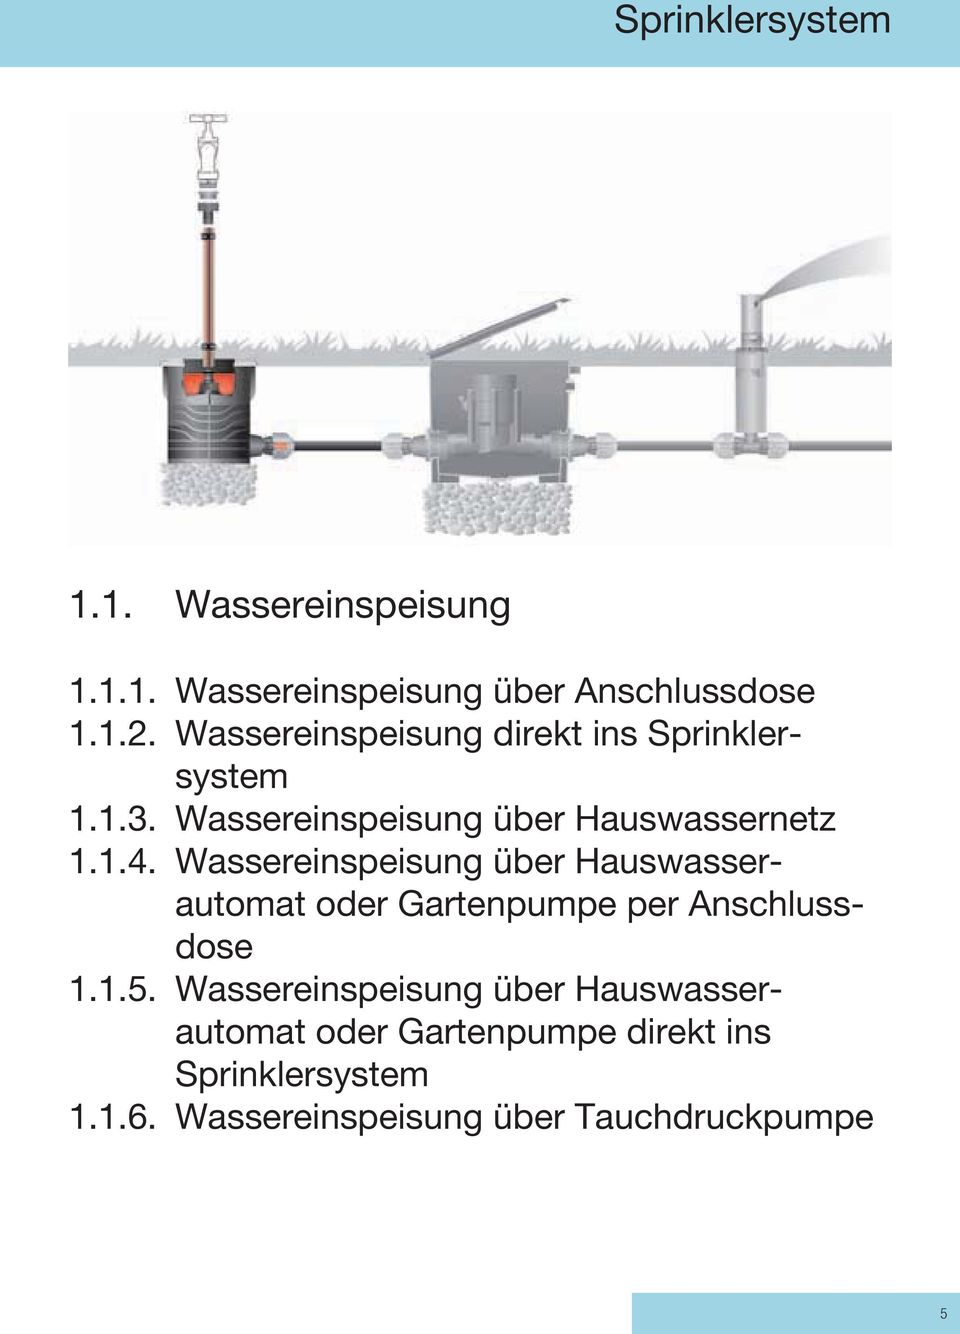 Wassereinspeisung über Hauswasserautomat oder Gartenpumpe per Anschlussdose 1.1.5.